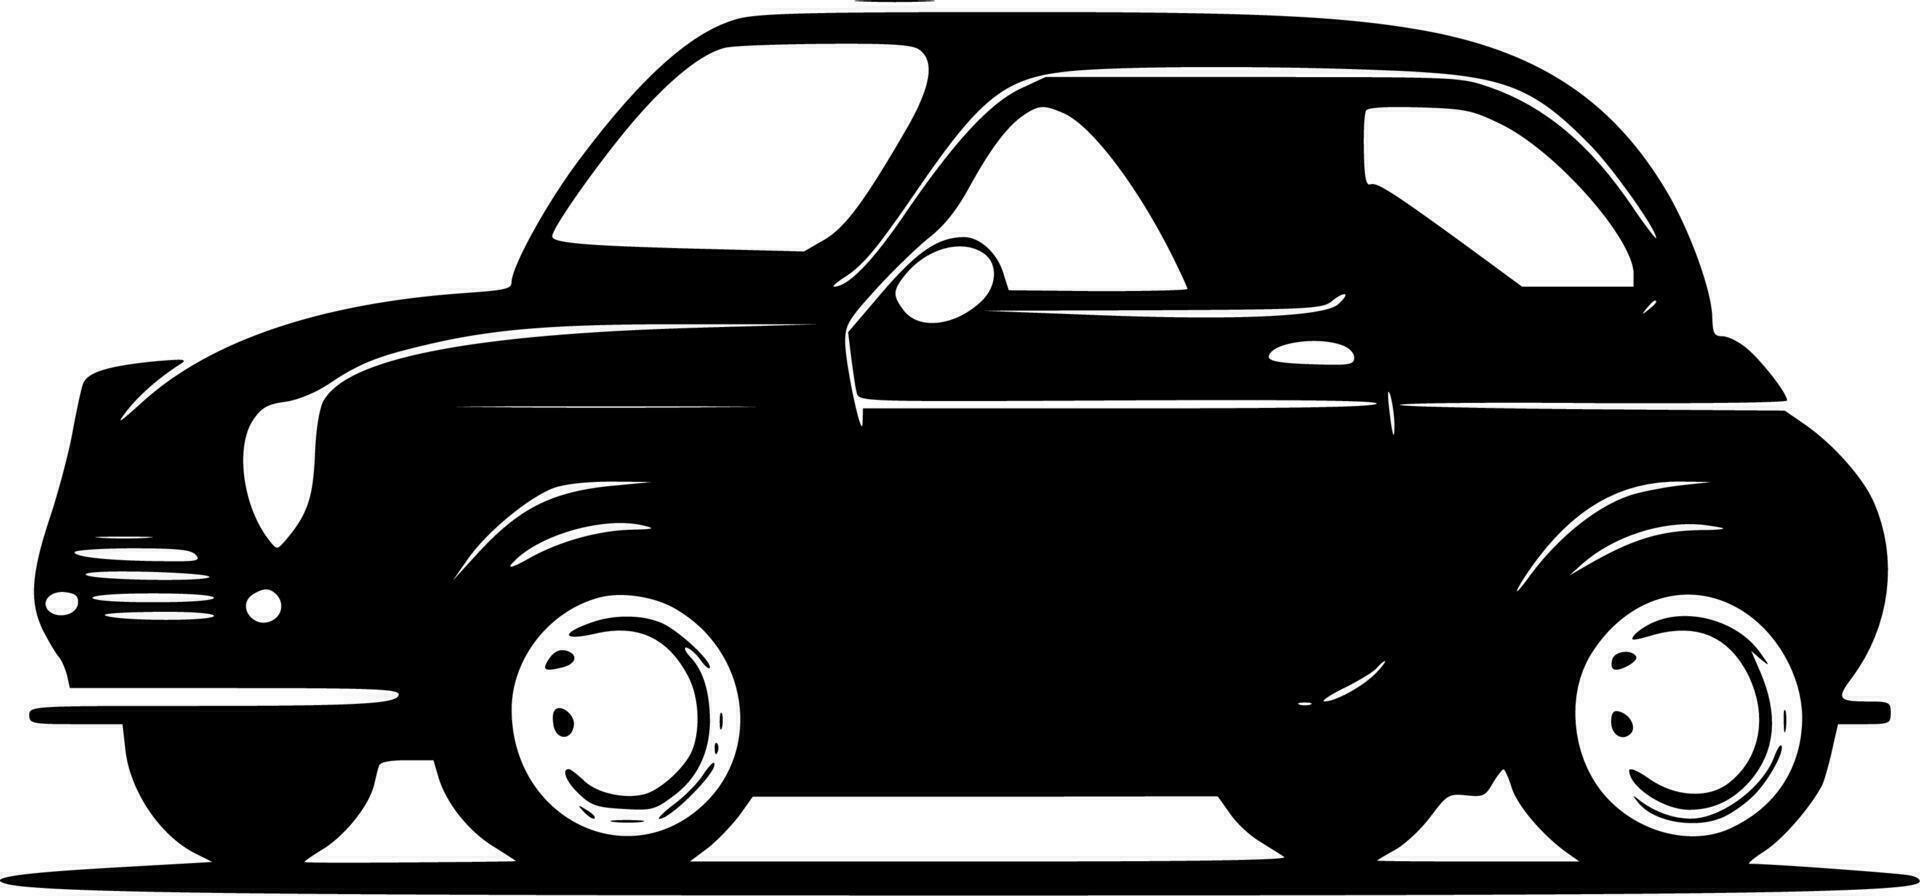 Auto - - schwarz und Weiß isoliert Symbol - - Vektor Illustration